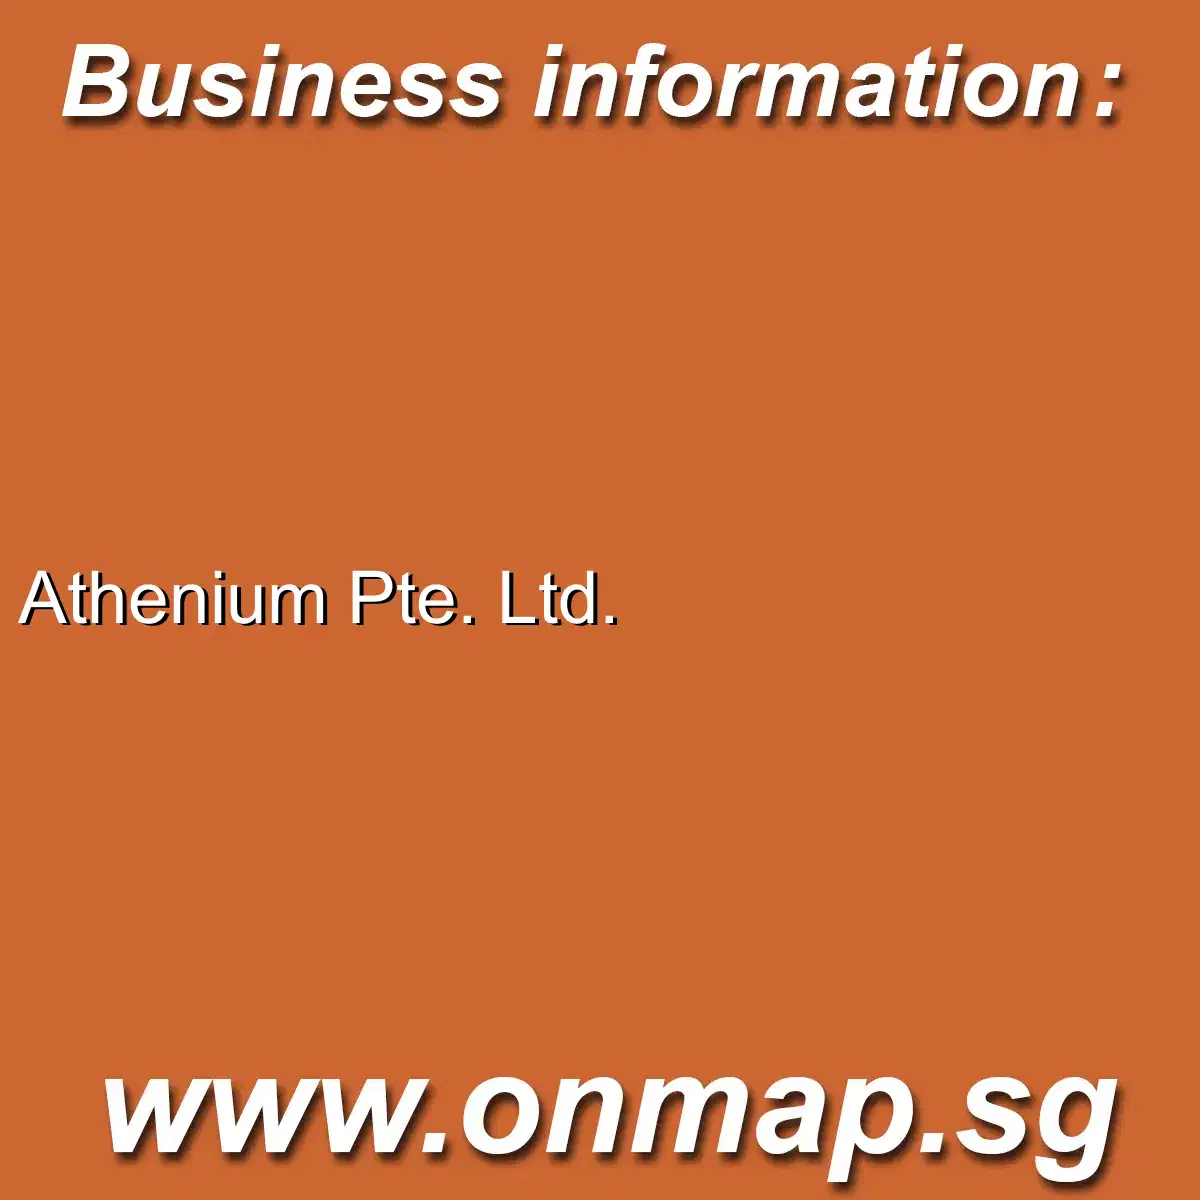 Athenium Pte. Ltd.